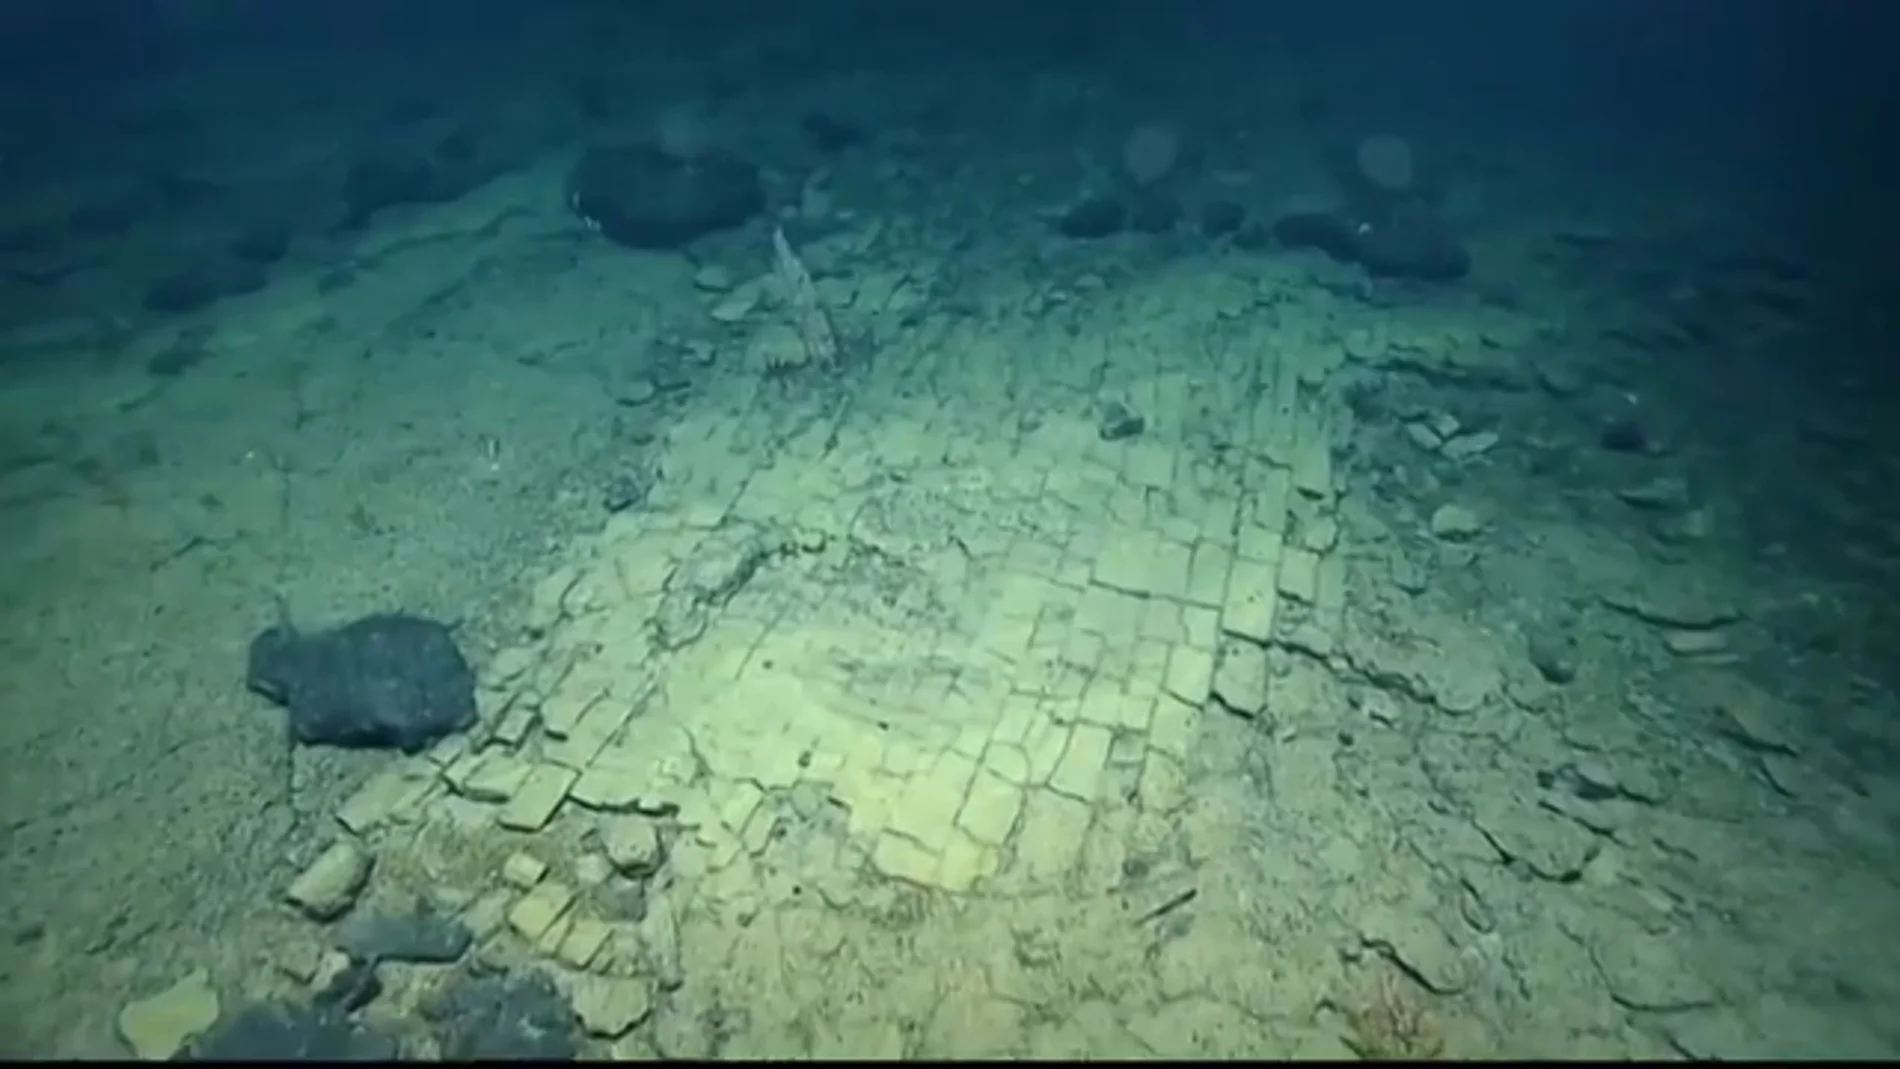 Descubren el 'camino a la Átlántida' a más de 1.000 metros de profundidad 